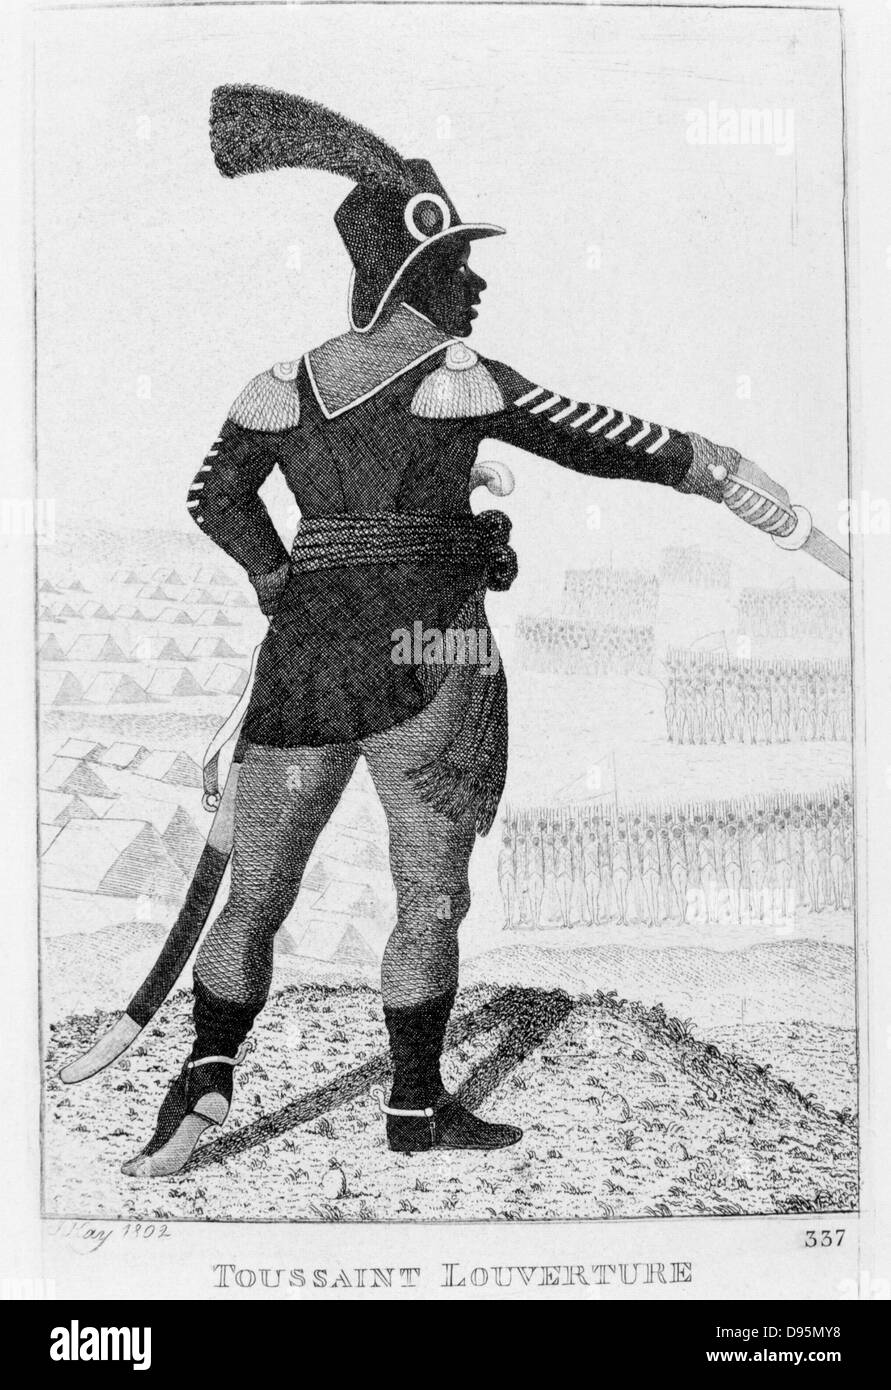 Pierre Dominique Toussaint l'ouverture (1746-1803), leader révolutionnaire haïtien. Gravure par John Kay, 1802. Banque D'Images